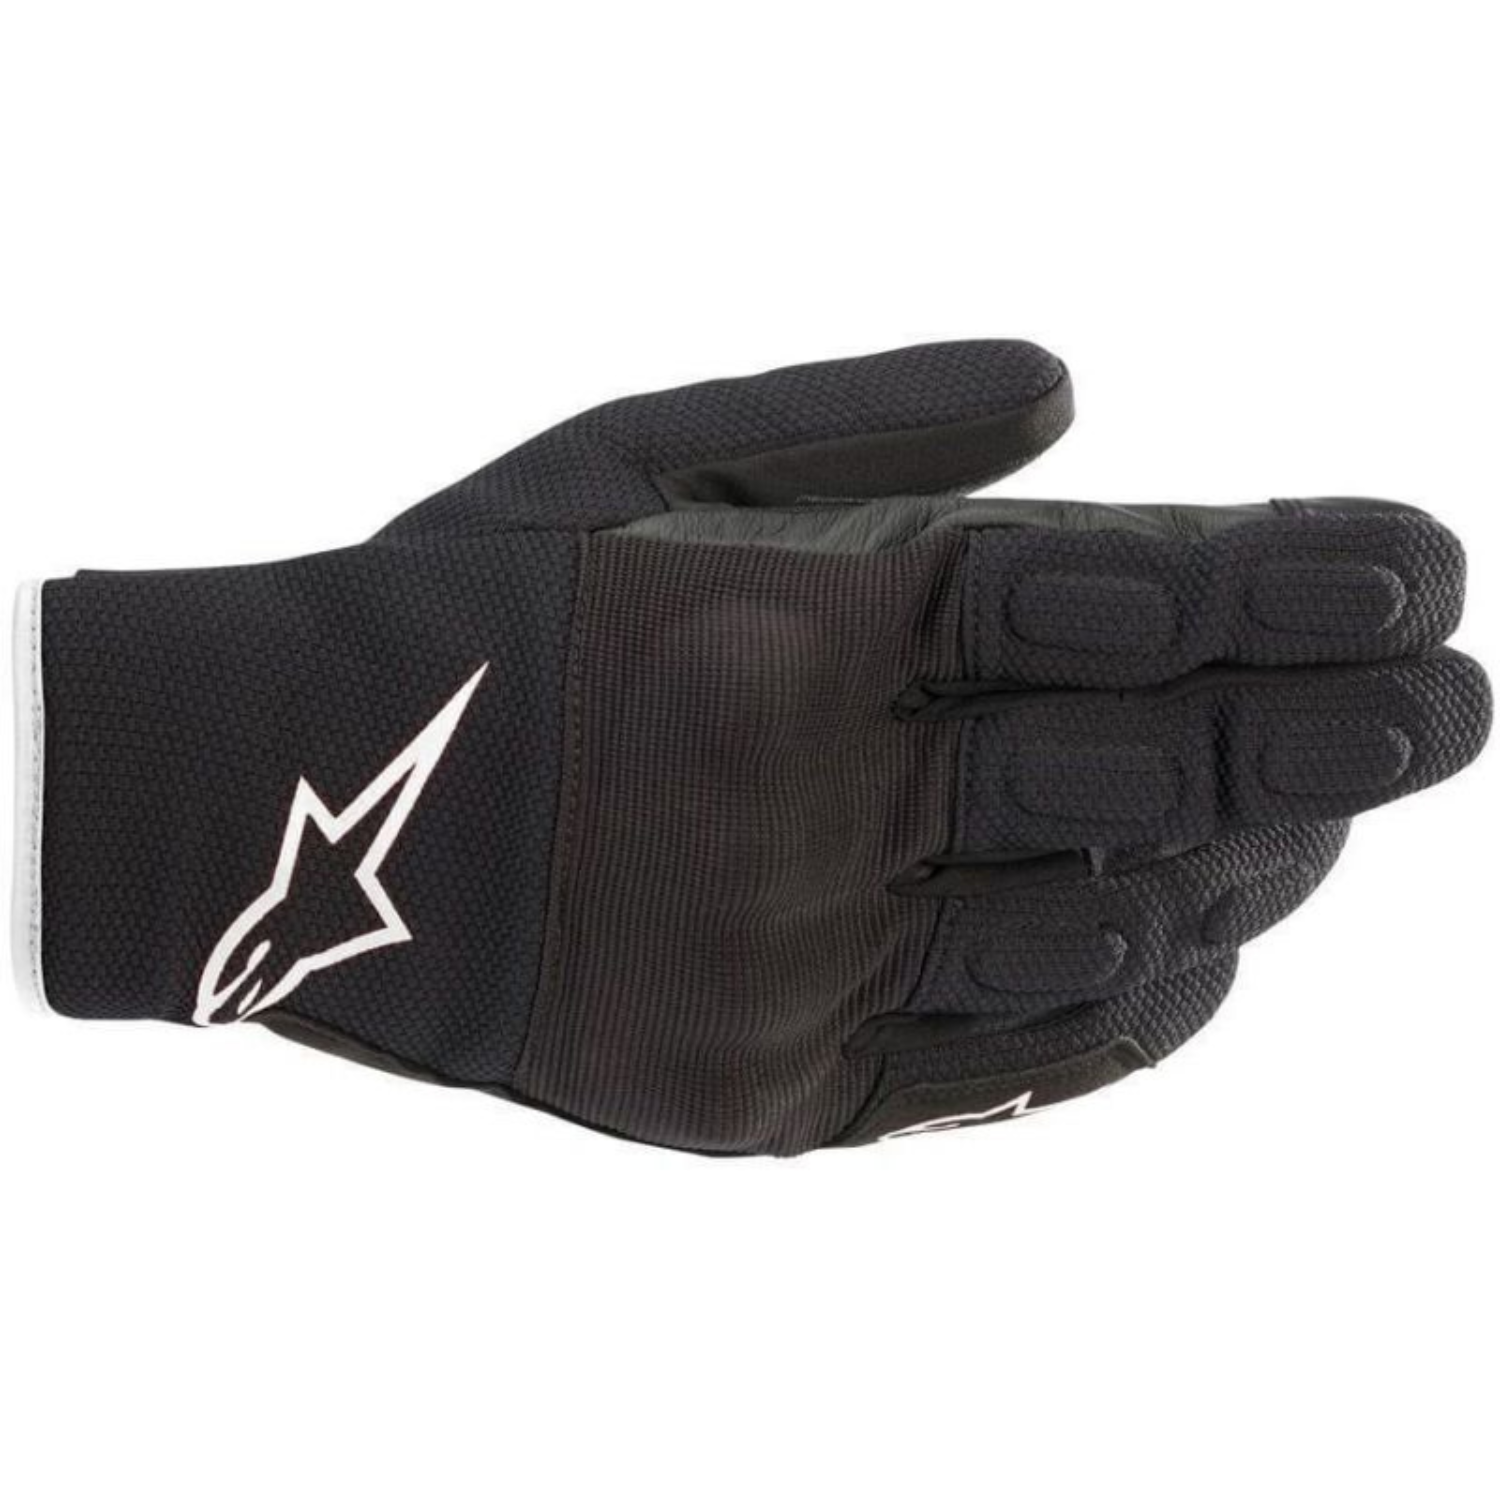 Image of Alpinestars S Max Drystar Gloves Black White Größe L